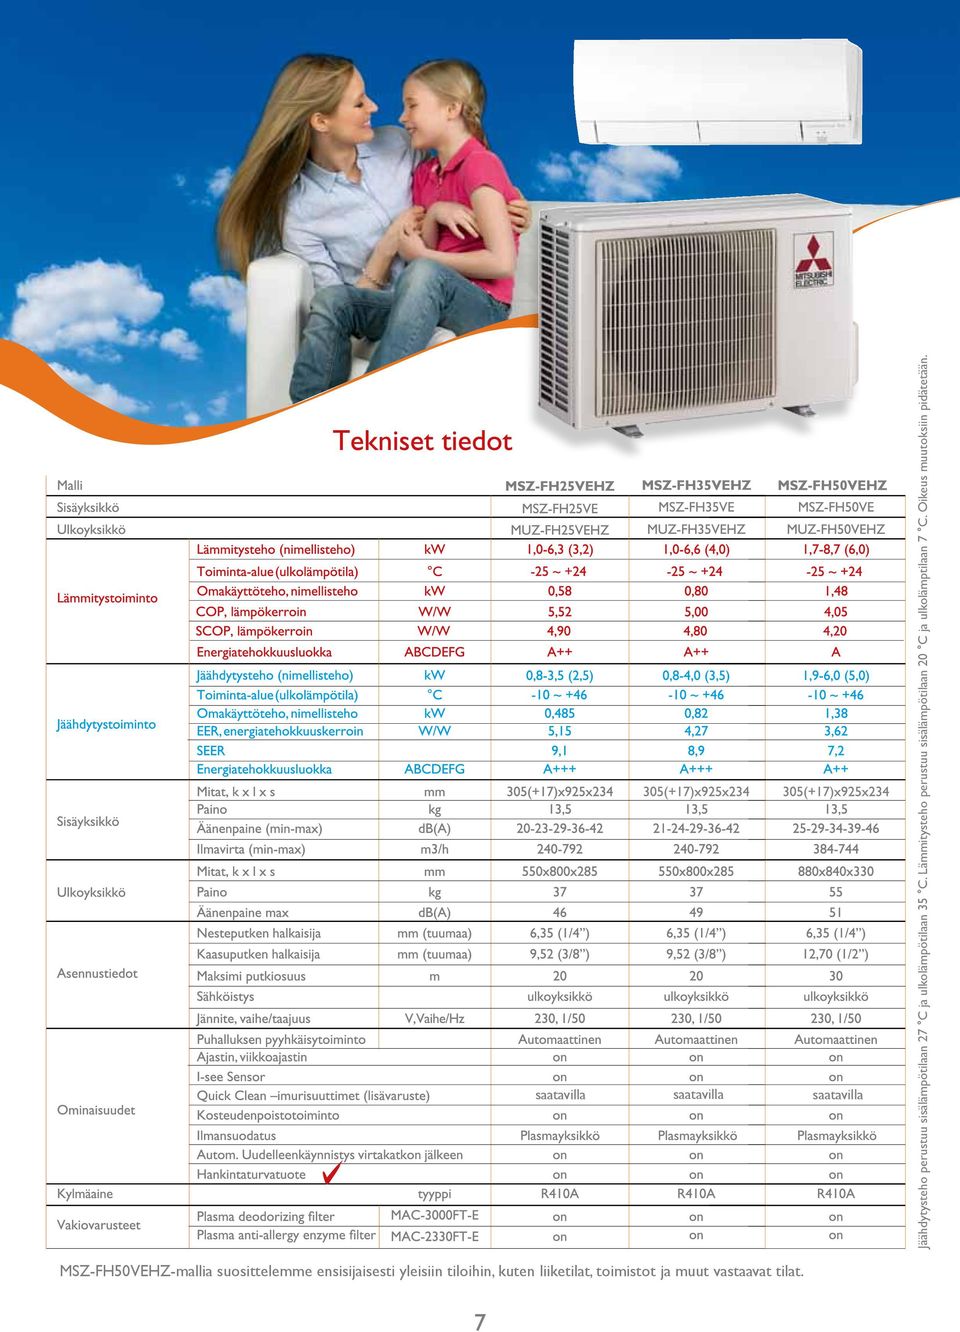 Lämmitysteho perustuu sisälämpötilaan 20 C ja ulkolämptilaan 7 C.